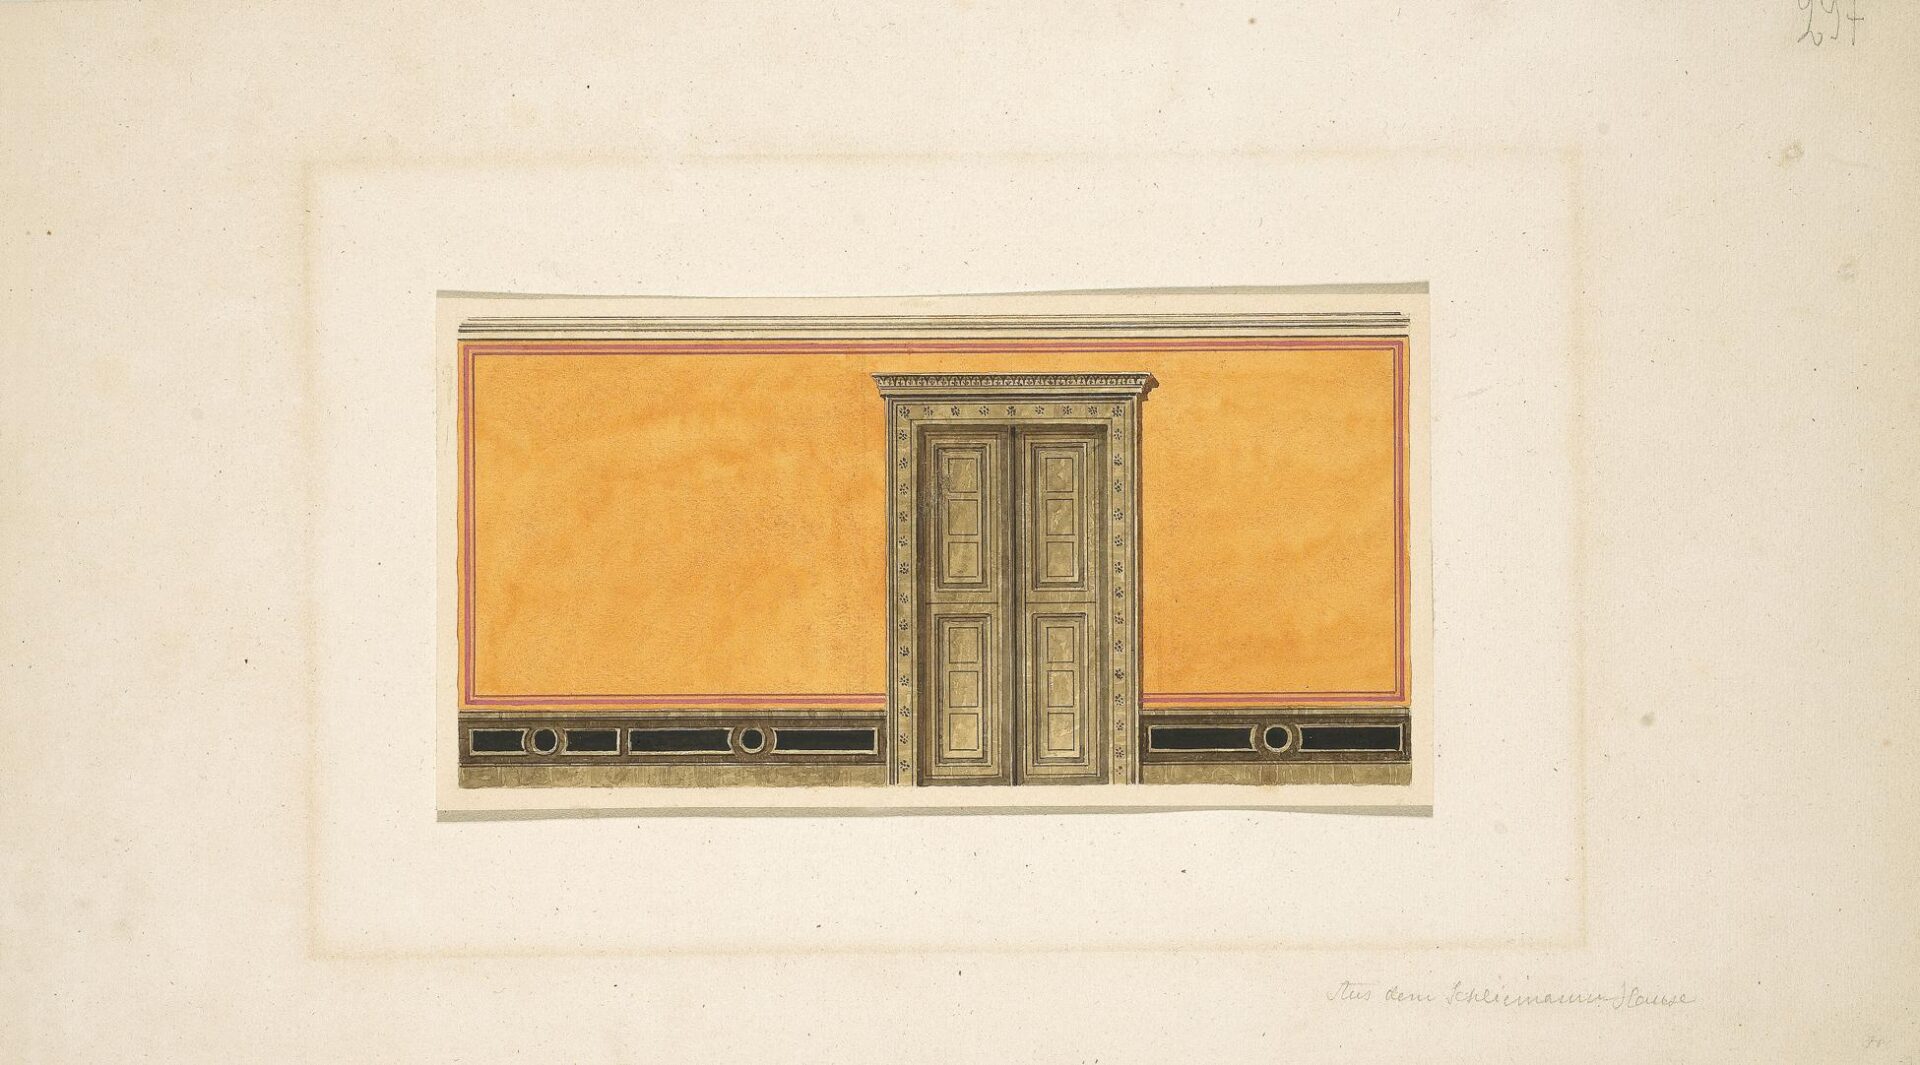 Μέγαρο Ερρίκου Σλήμαν “Ιλίου Μέλαθρον”. Διακόσμηση τοίχου με άνοιγμα πόρτας - Ziller Ernst